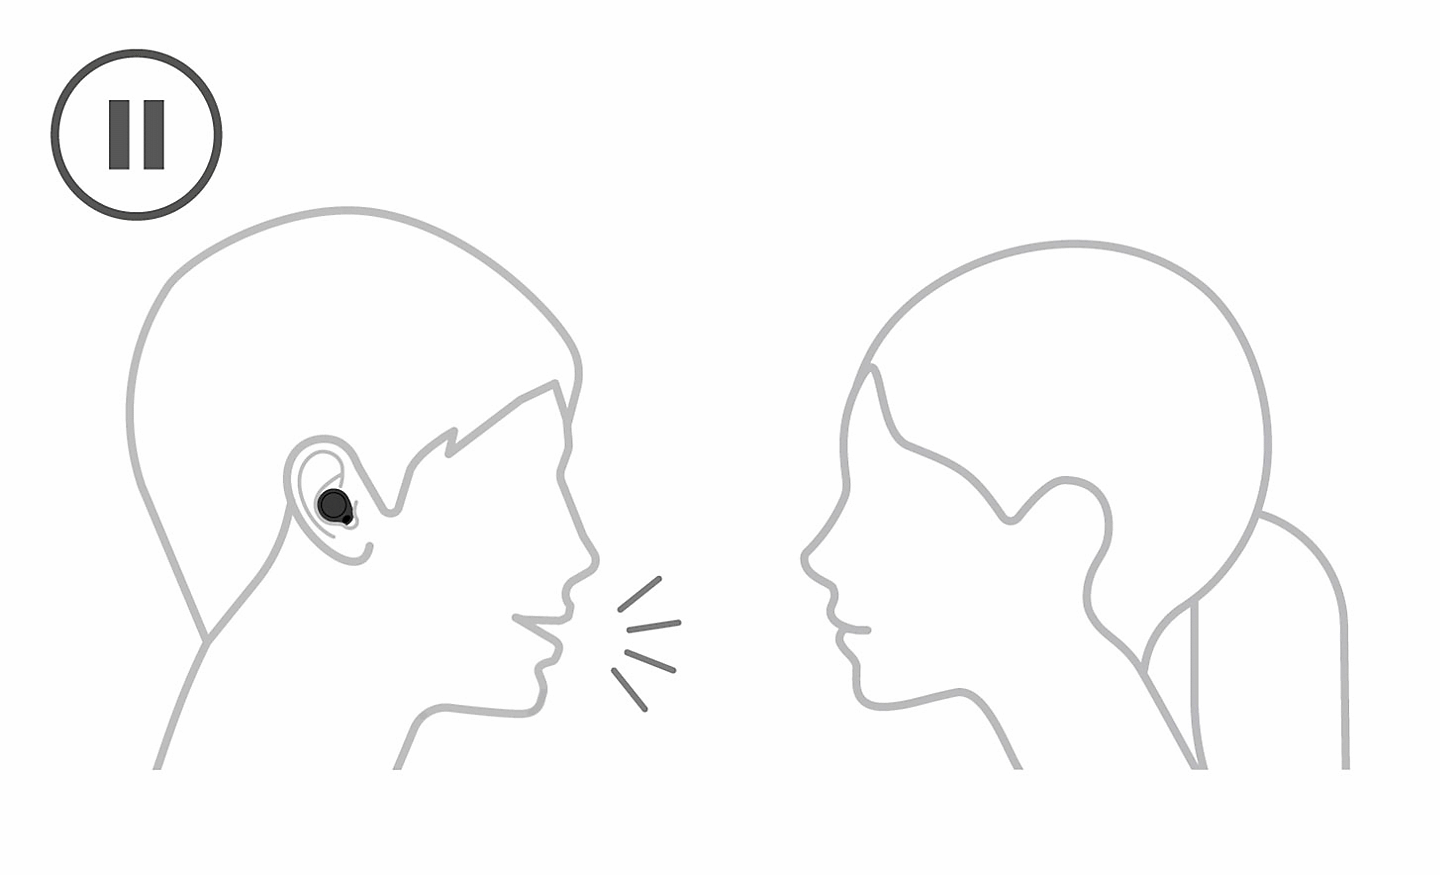 Dibujo con líneas de una persona con unos auriculares puestos hablando con otra sin auriculares. Se ve un icono de pausa arriba a la izquierda.